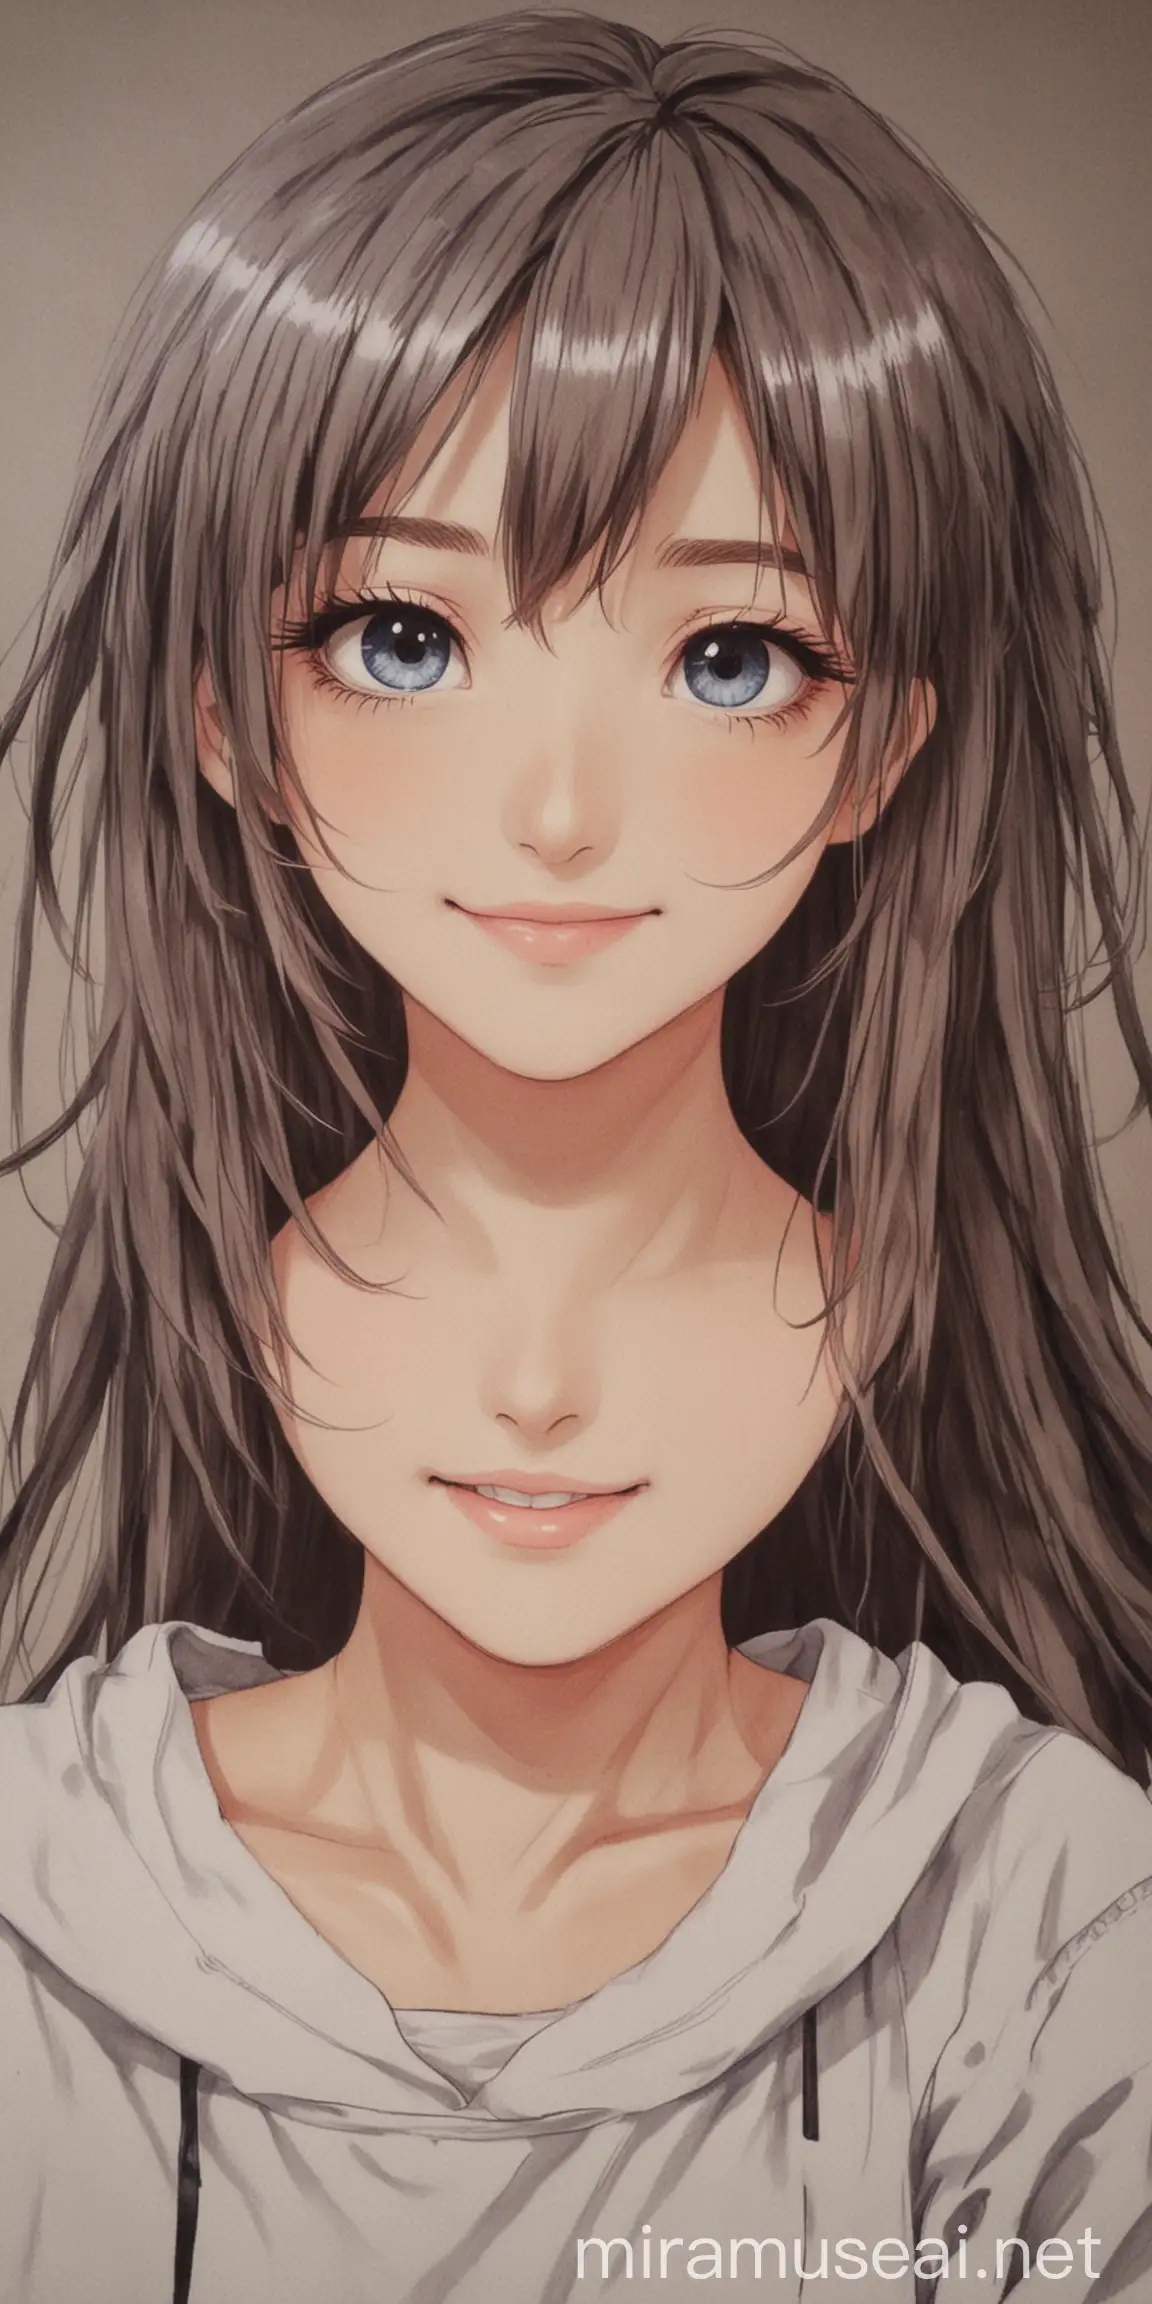 bu resim gibi iki mutlu 16 yaşında kız anime çizim